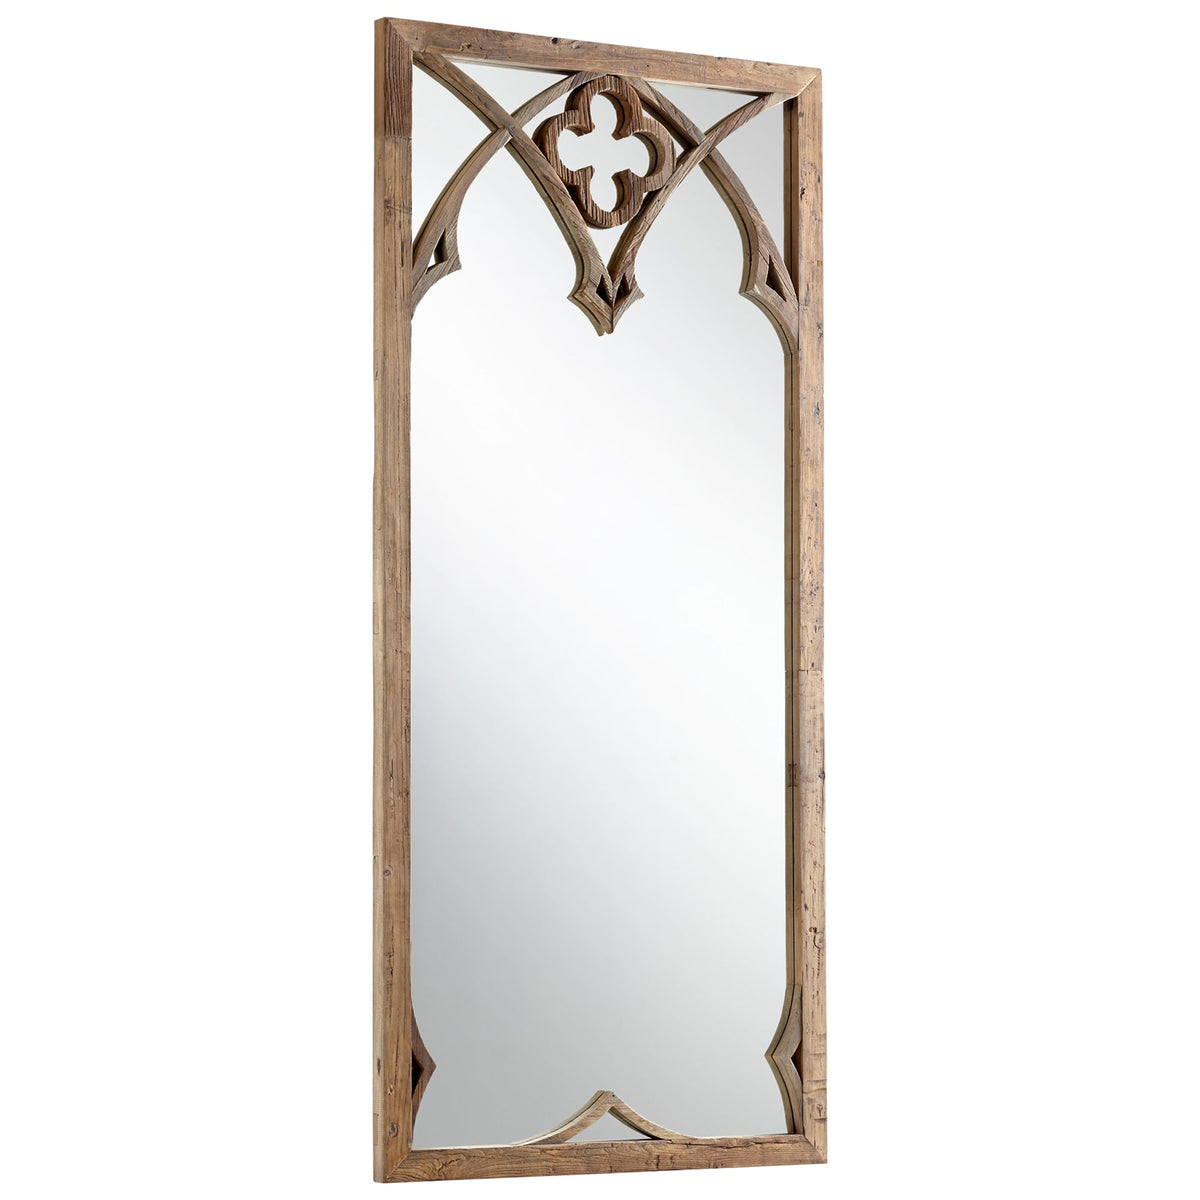 Tudor Mirror by Cyan